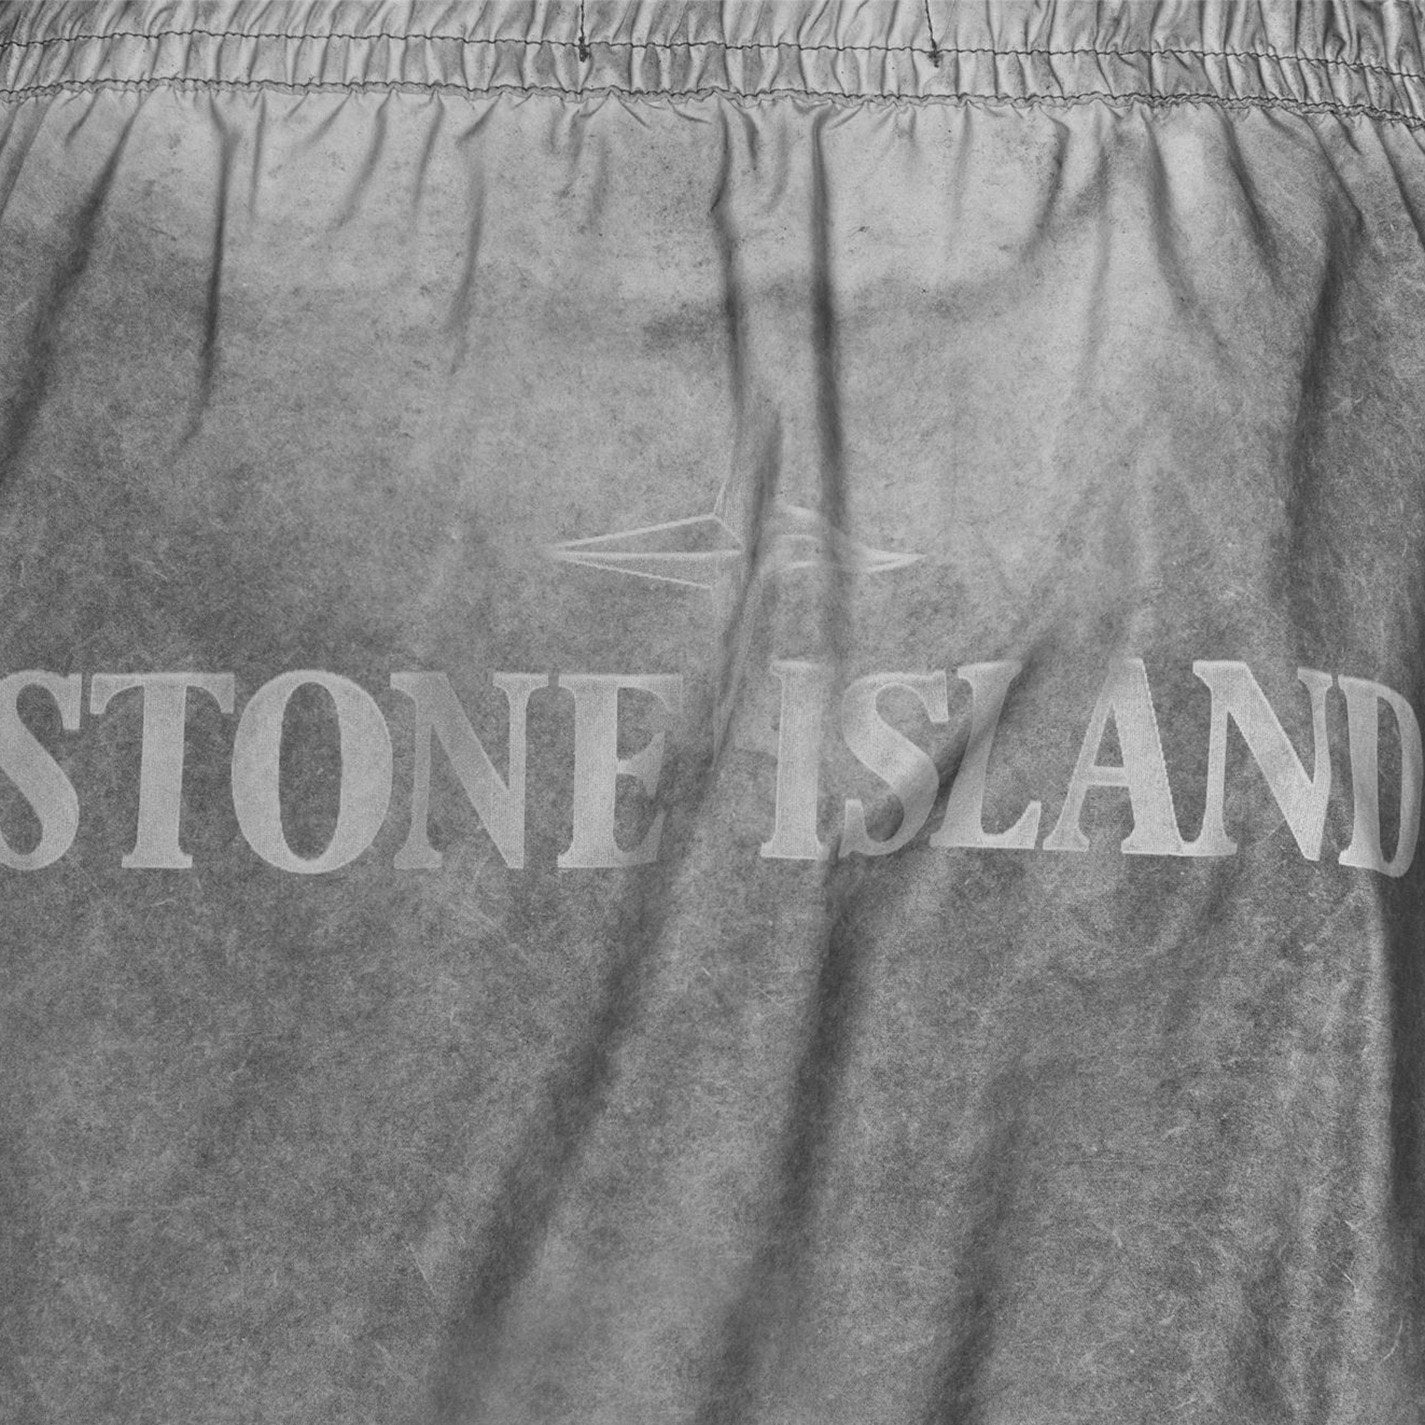 Stone Island Grey Reflective Logo Shorts Shorts Stone Island 